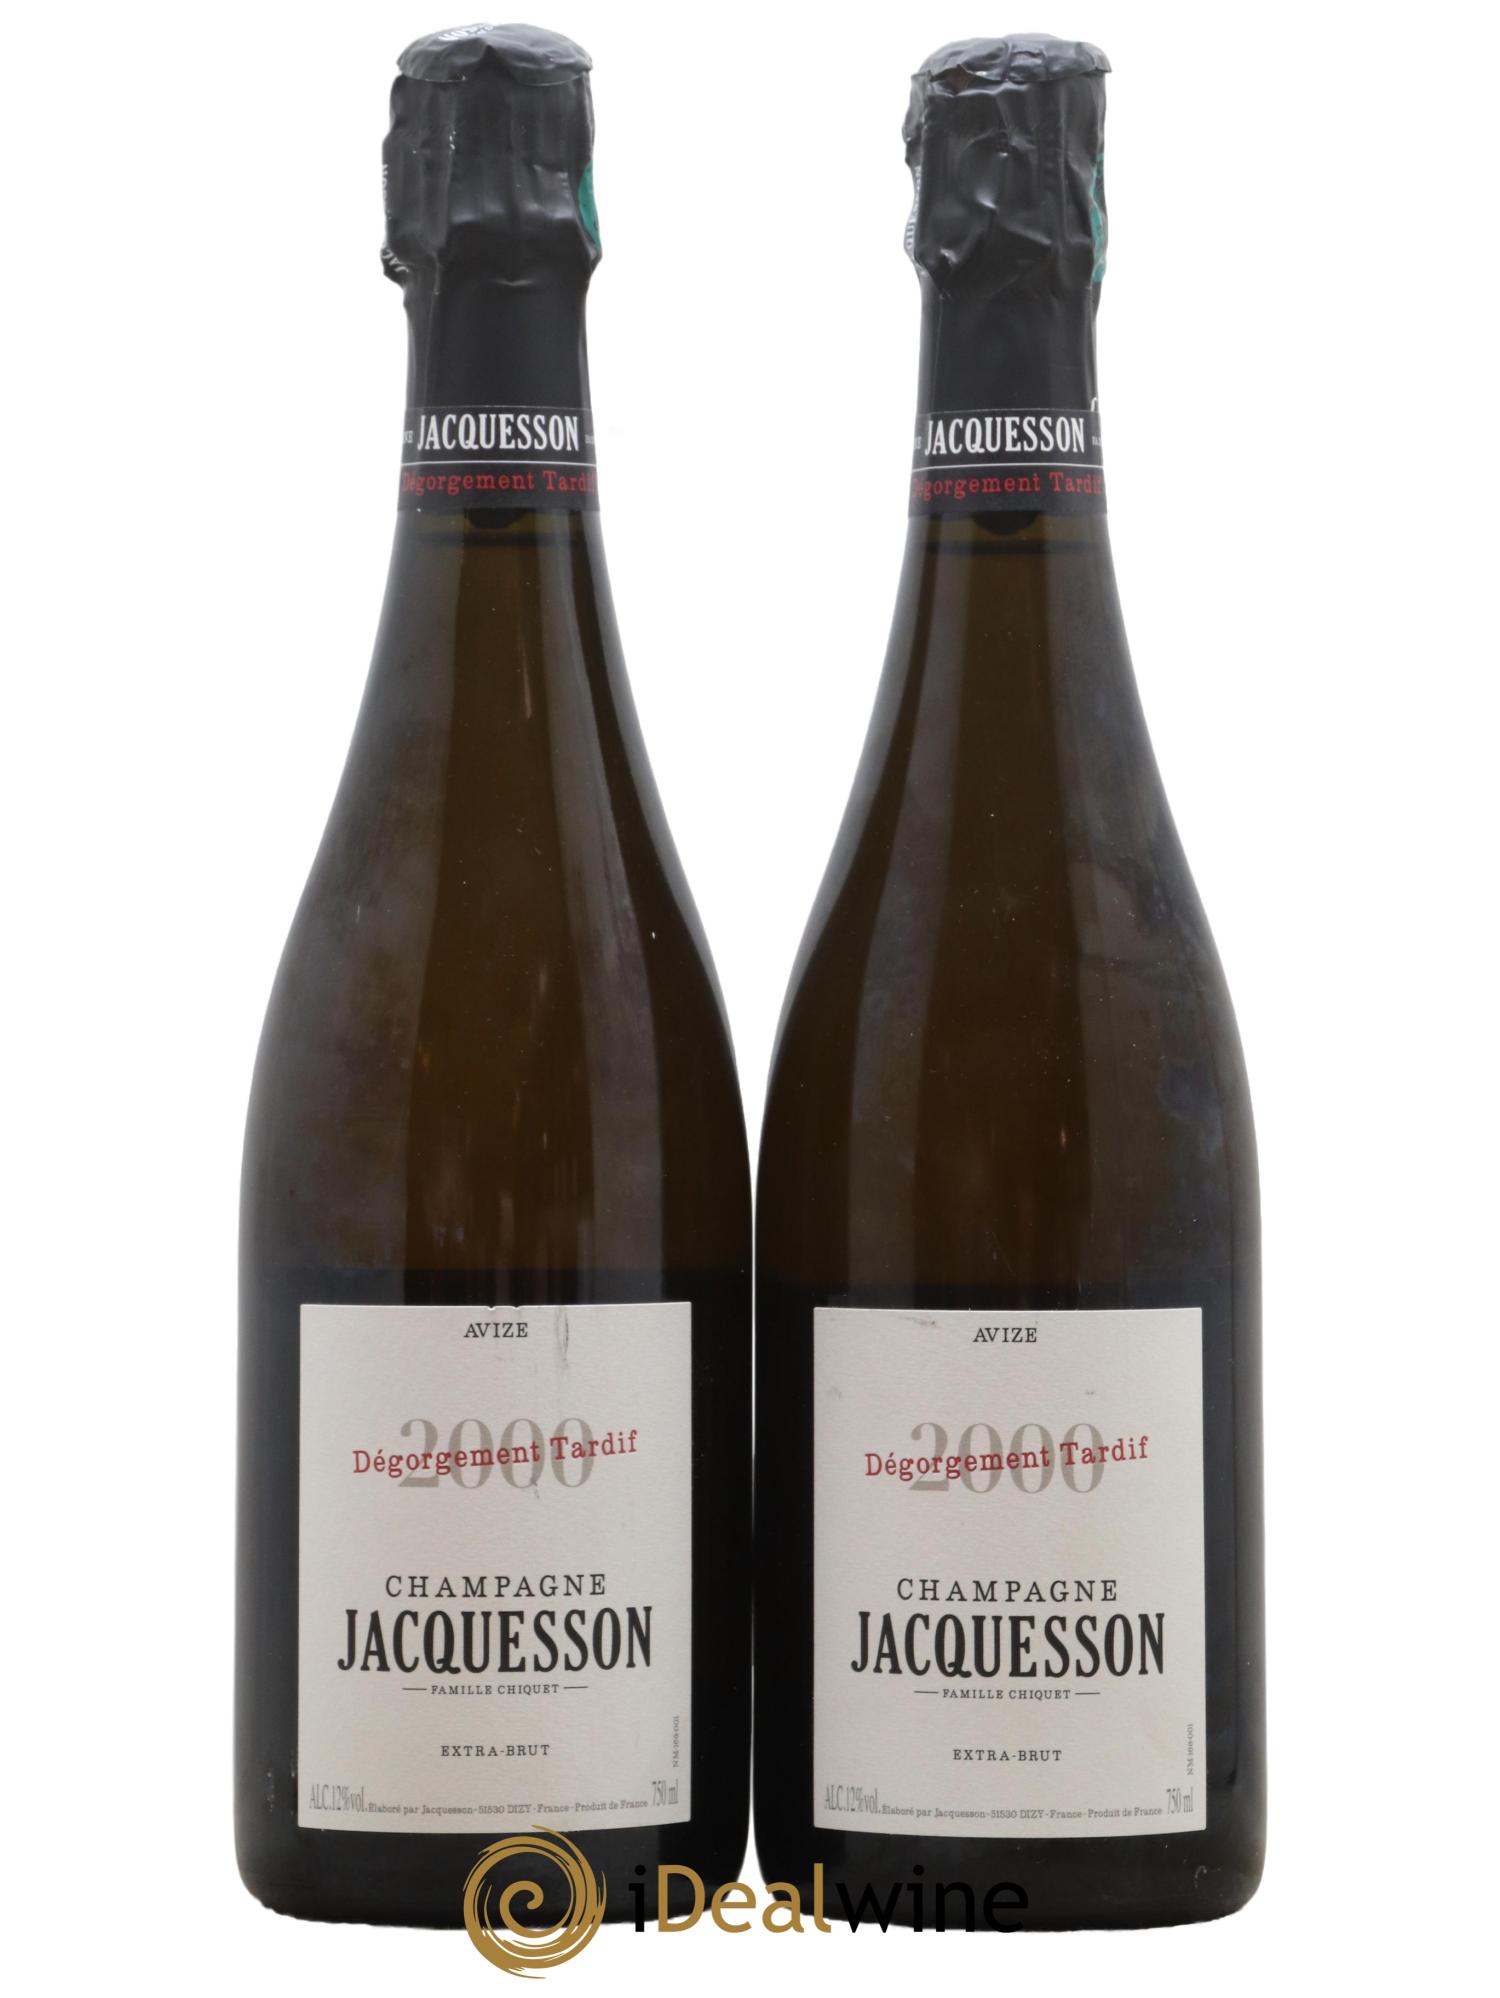 Champagne Jacquesson Avize DT (Dégorgement Tardif) (Blanc effervescent)